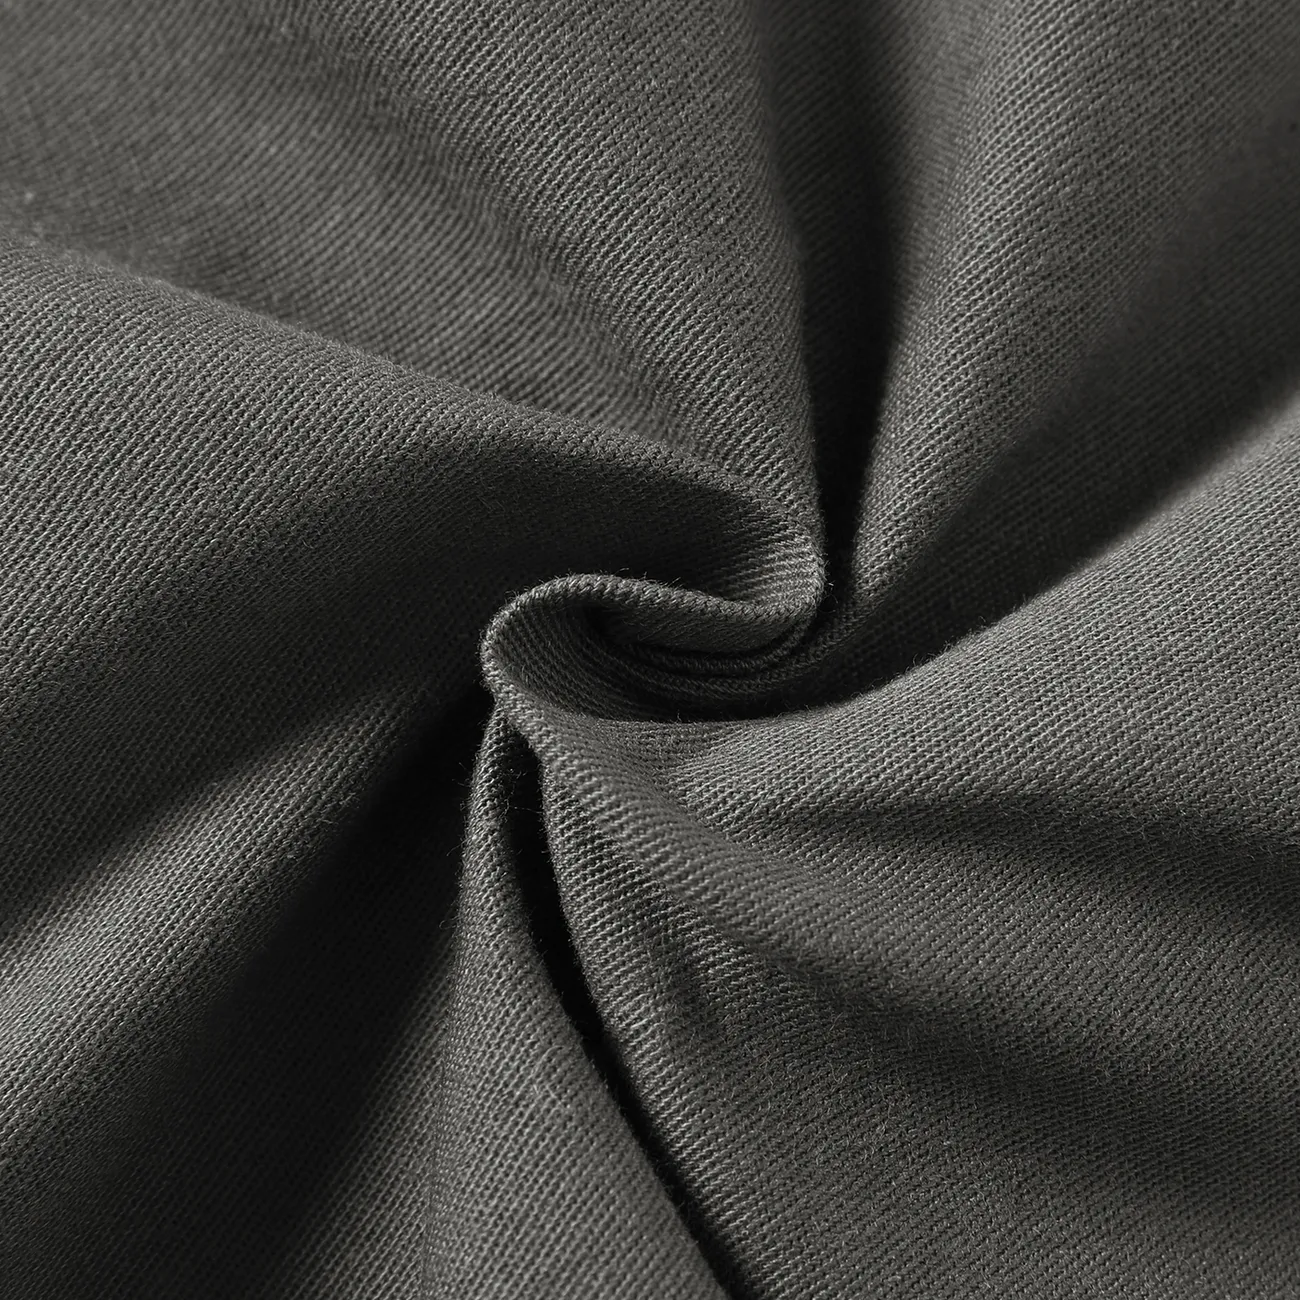 Toddler Girl/Boy 100% Cotton Solid Color Pocket Design Overalls Dark Grey big image 1